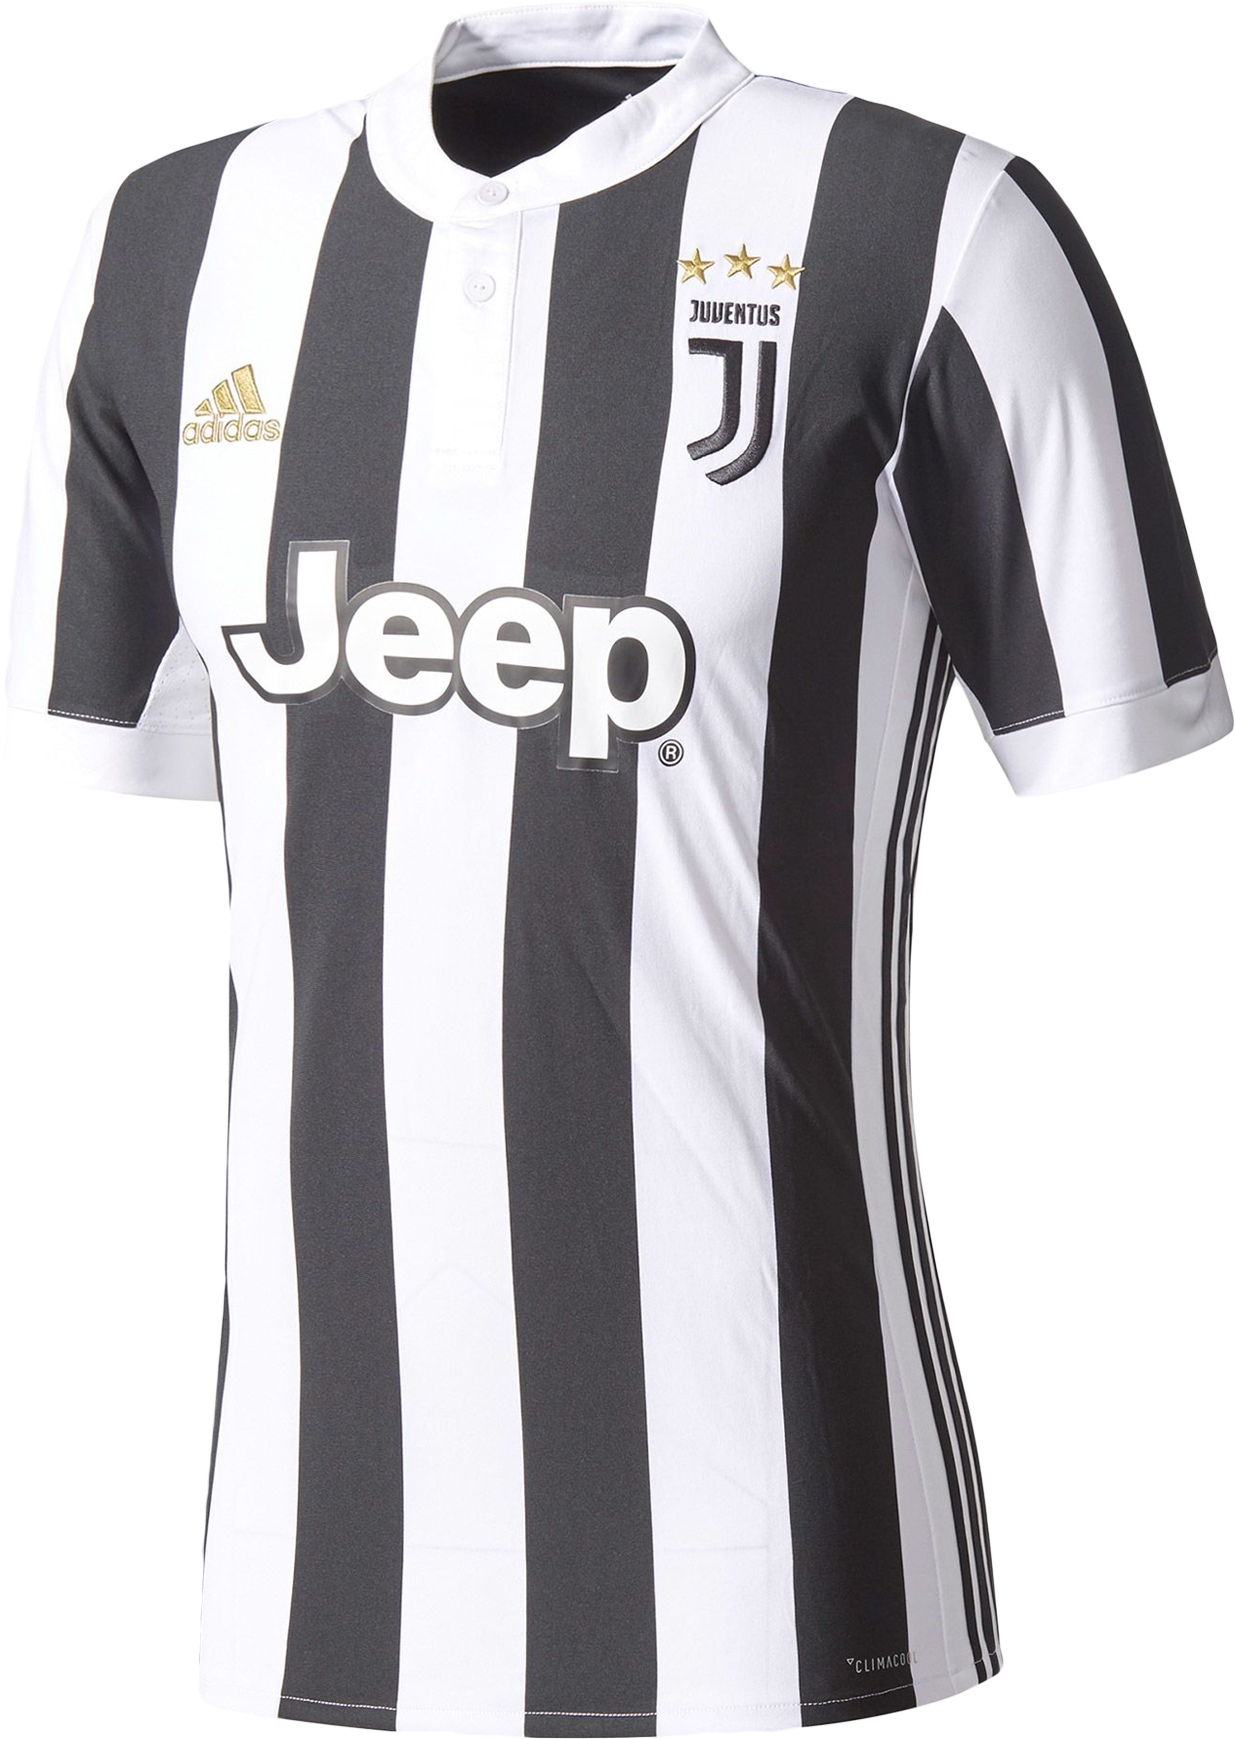 Front - Juventus Jersey 17 18 (1800x1800), Png Download